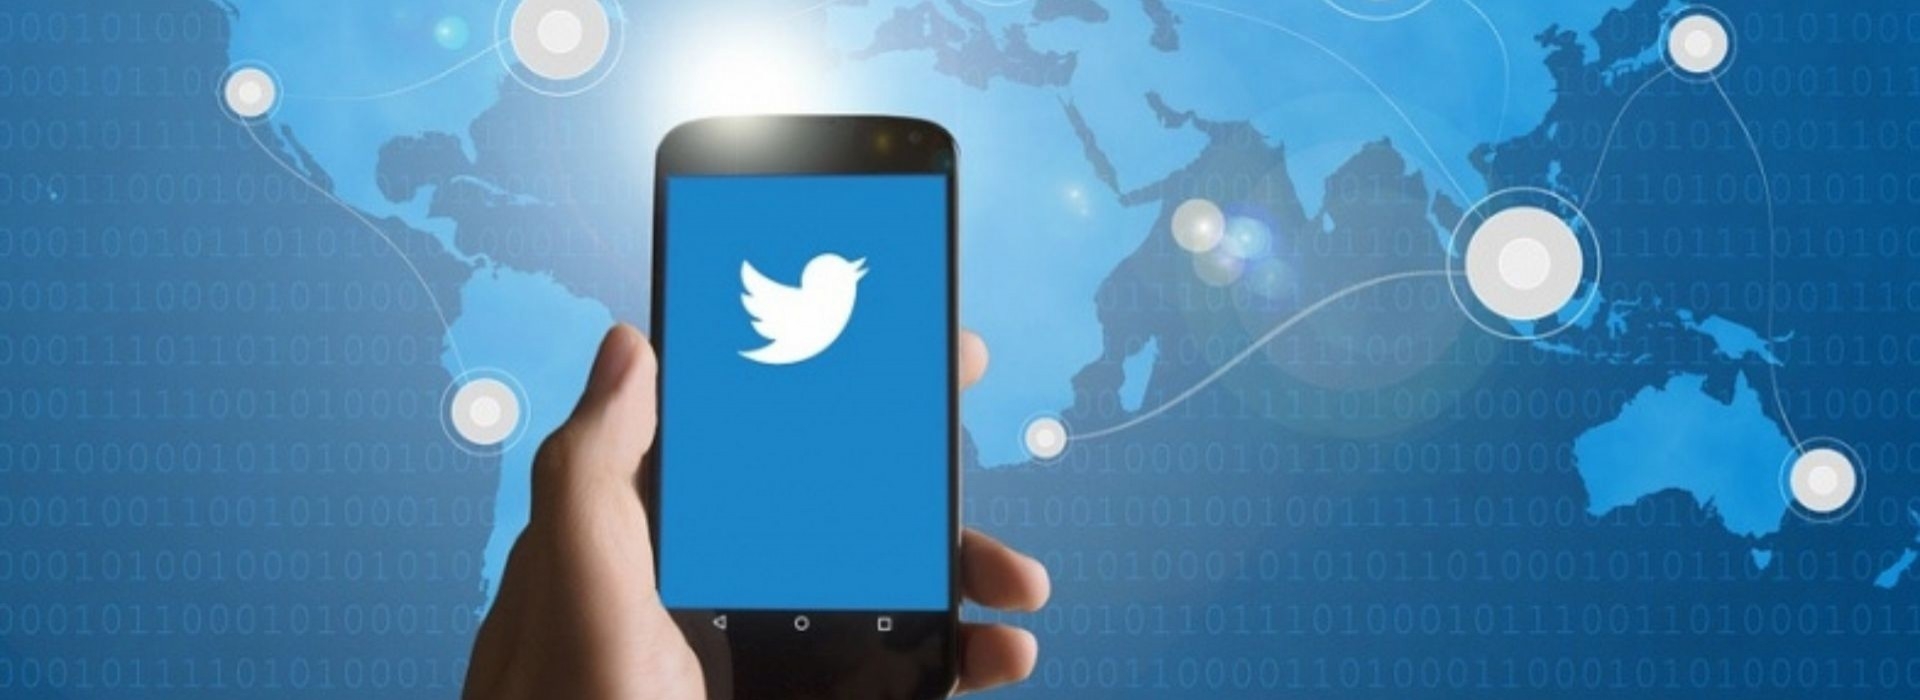 Twiplomacja, czyli Twitter jako platforma wymiany myśli politycznej